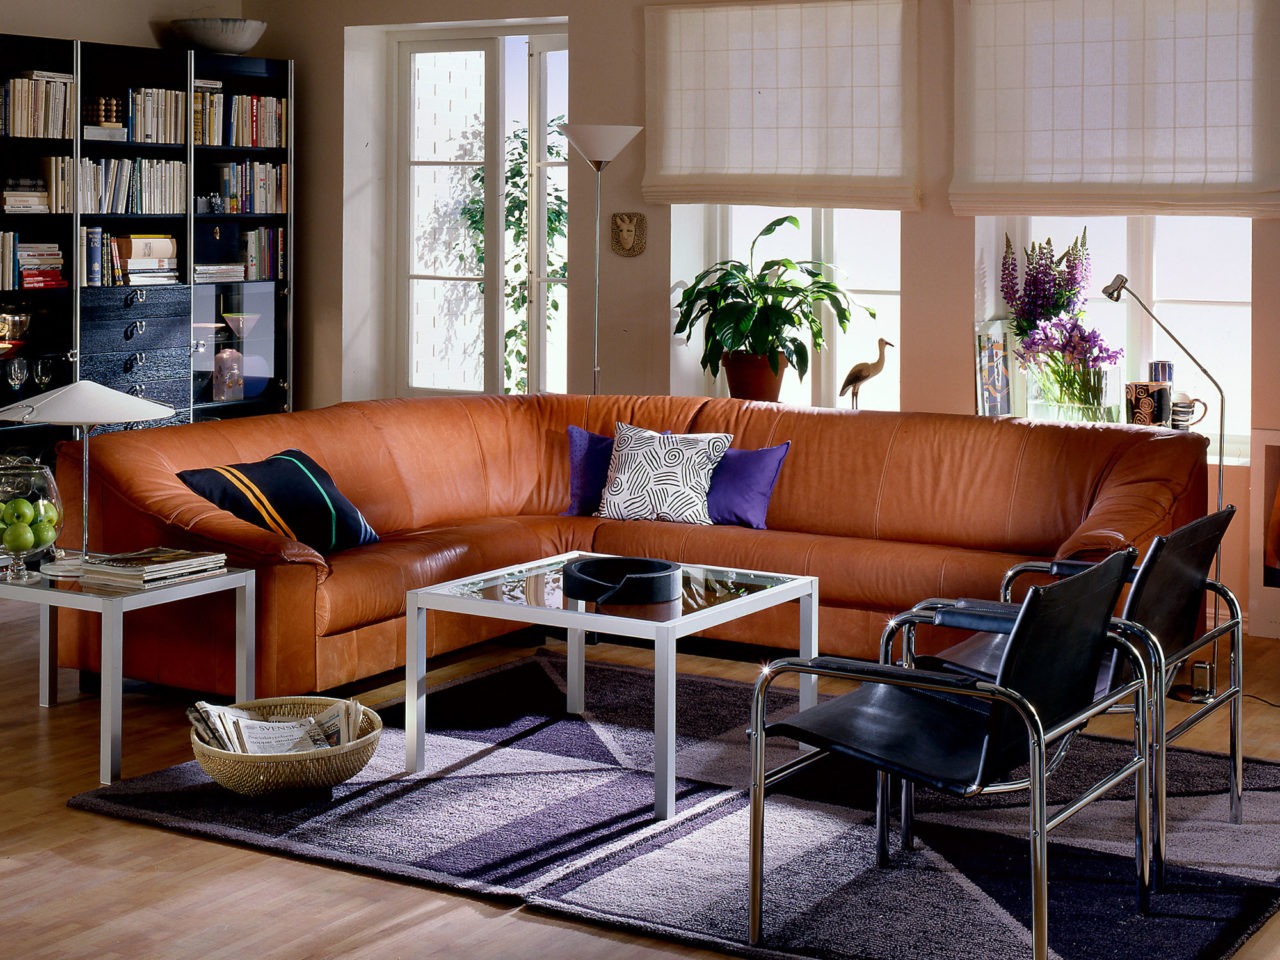 Salon parqueté avec grand canapé d’angle en cuir marron. À côté, deux chaises chrome et cuir noir.